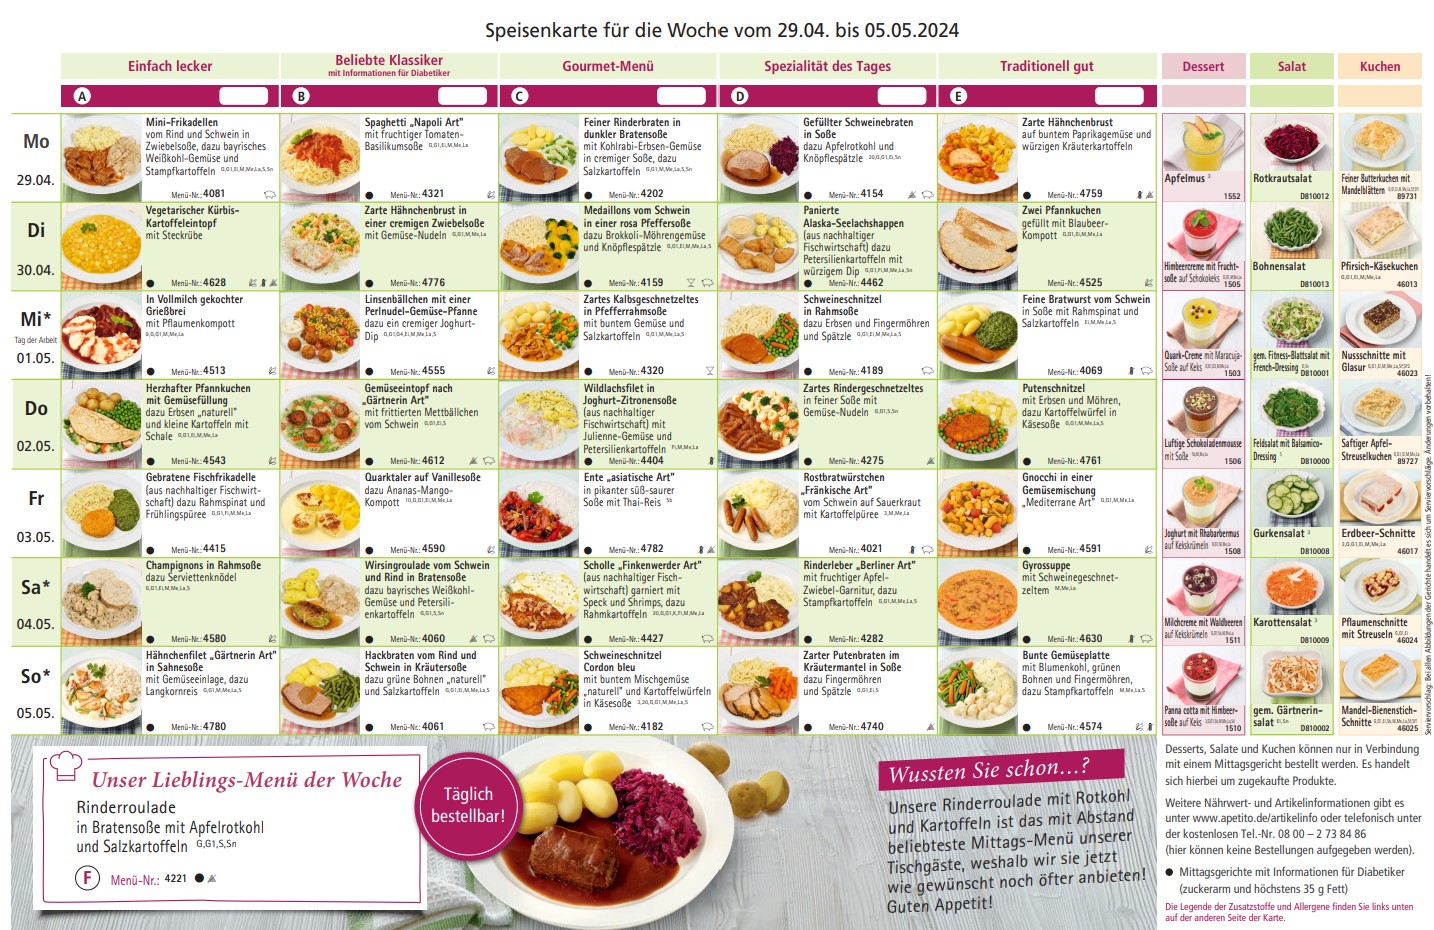 Speisenkarte für die Kalenderwoche 18
vom 29.04. bis 05.05.2024.